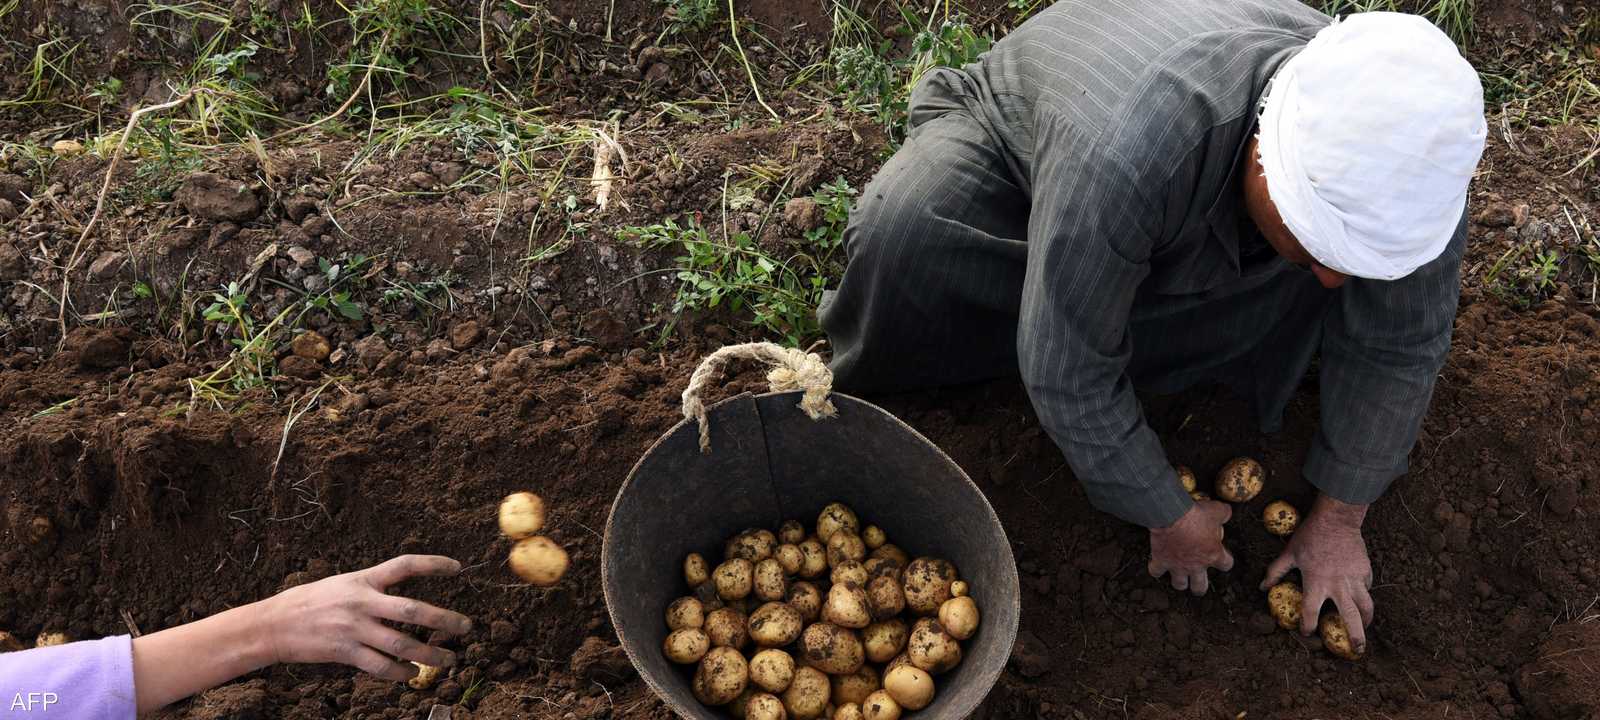 أسعار البطاطا في مصر ارتفعت مؤخرا